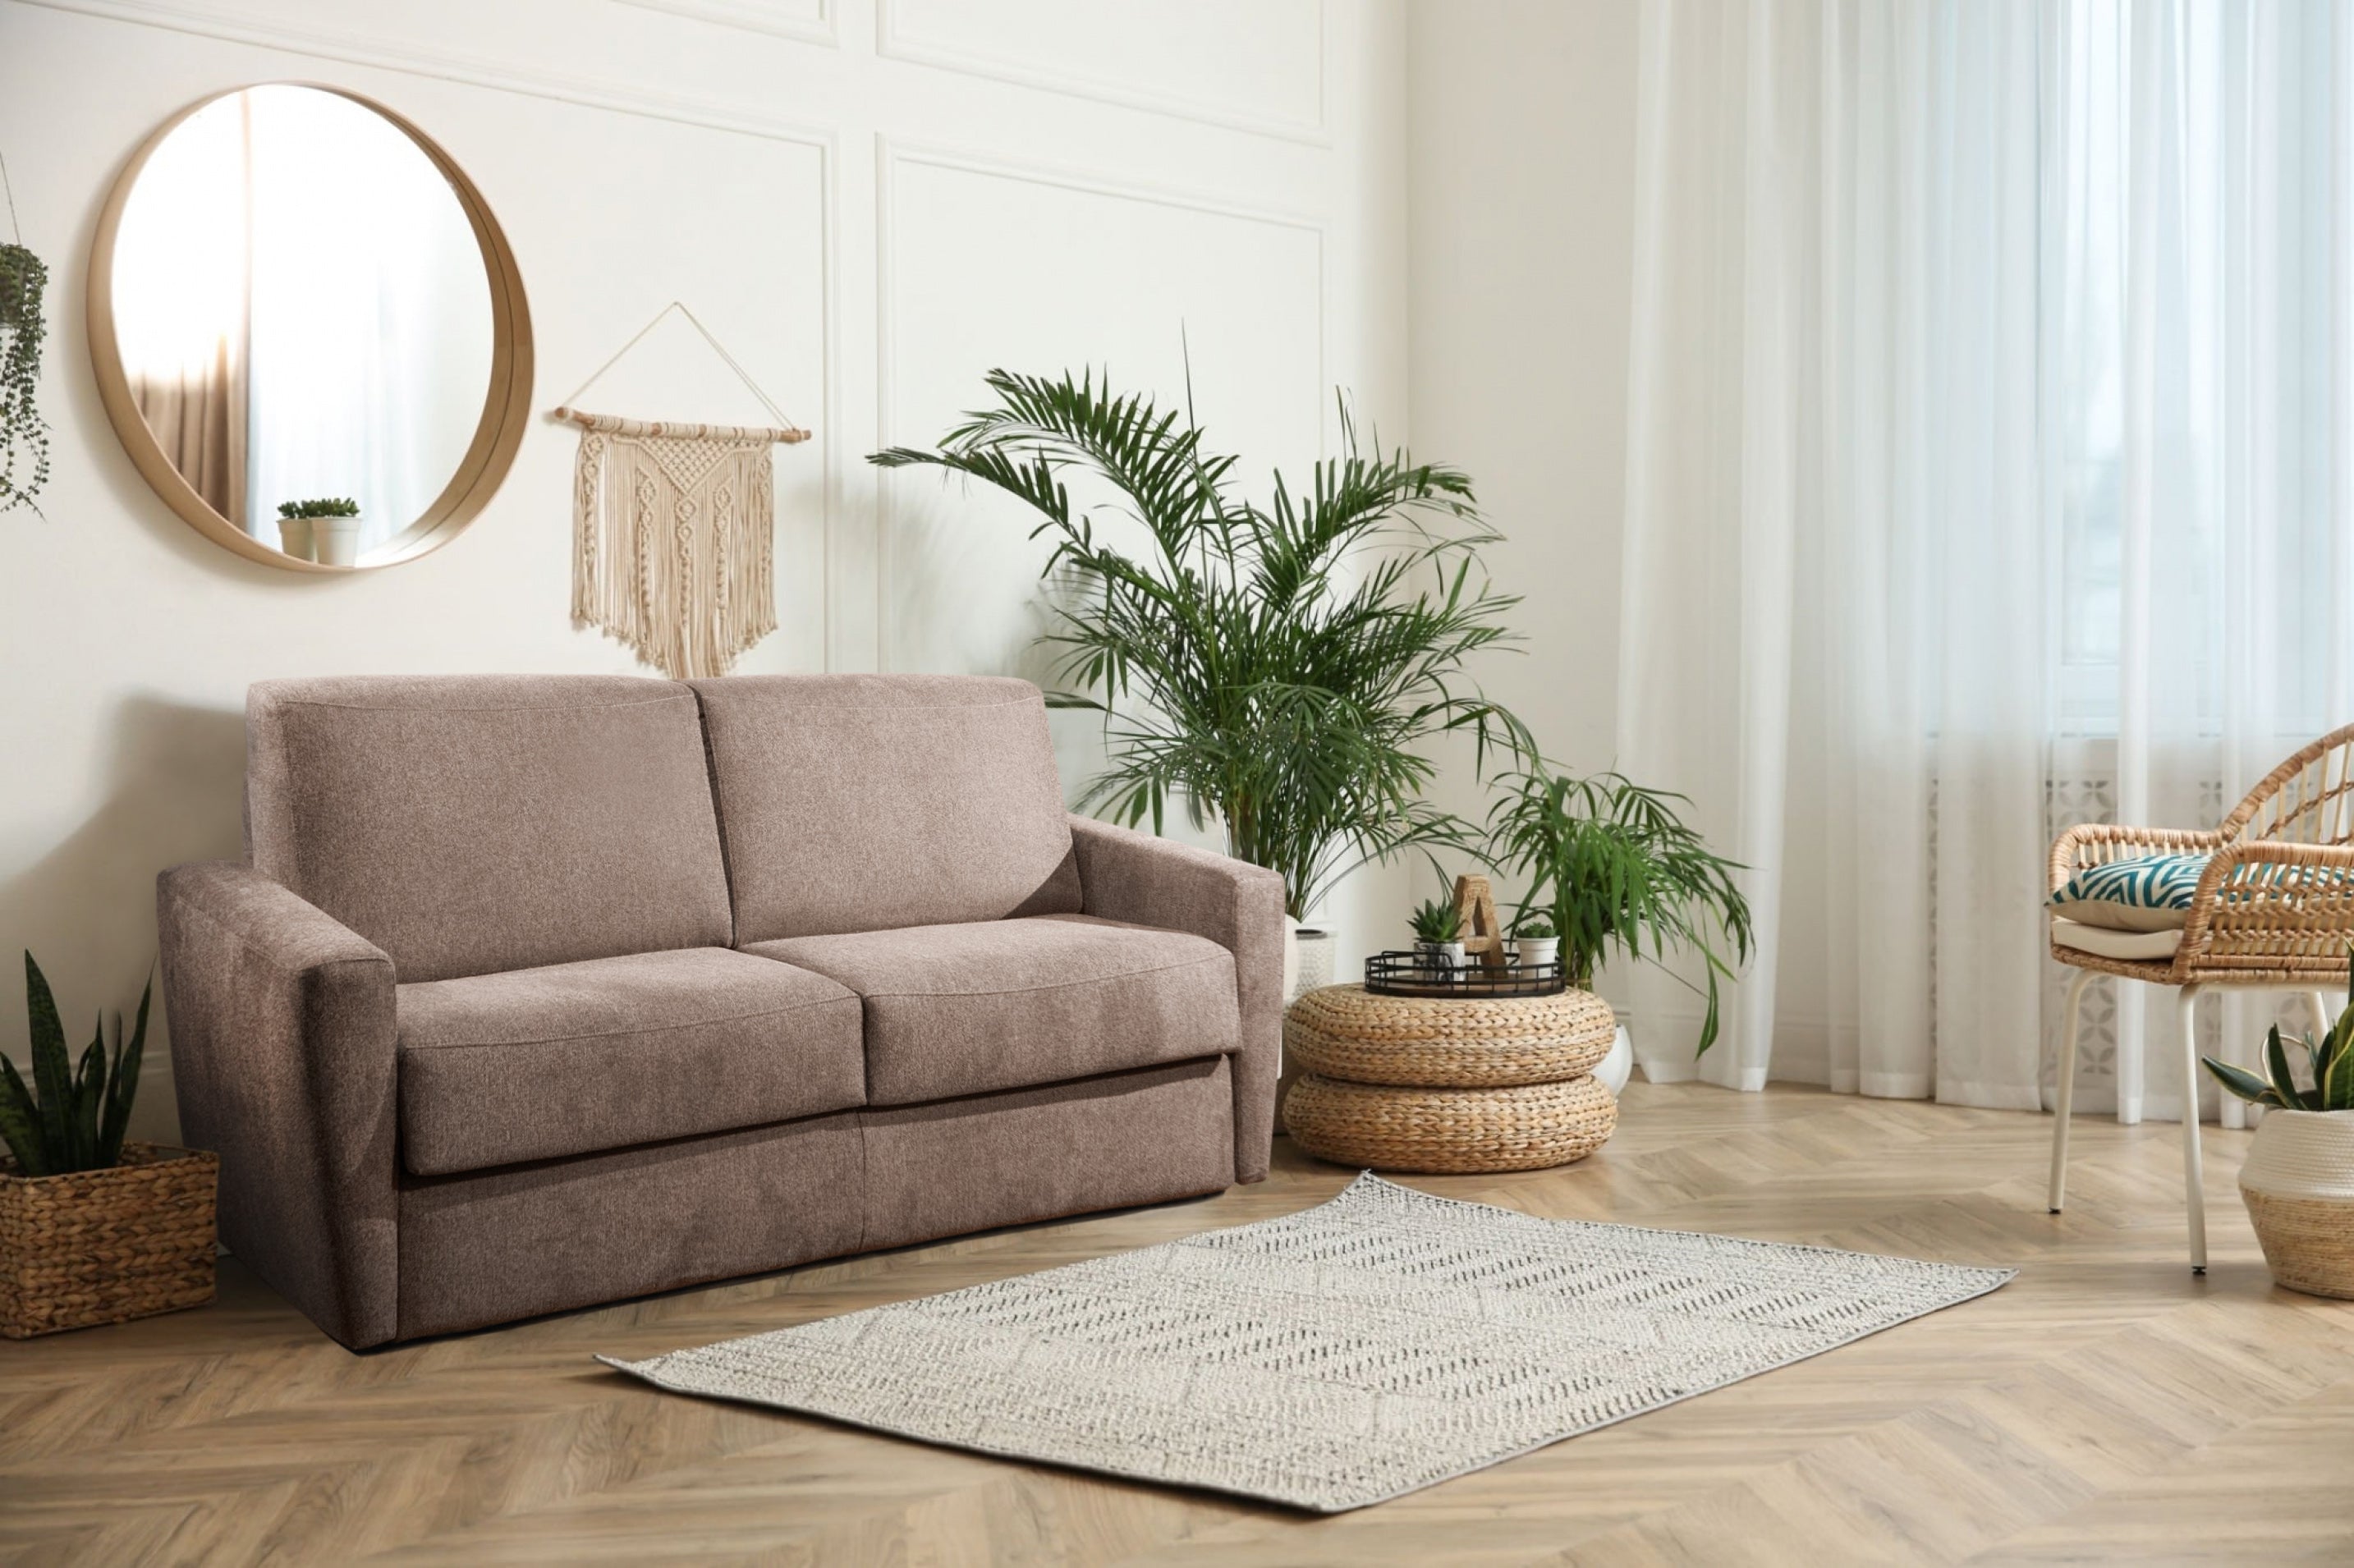 Divano letto pieghevole da pavimento contemporaneo materasso da salotto  regolabile divano pigro con cuscini lettino ribaltabile